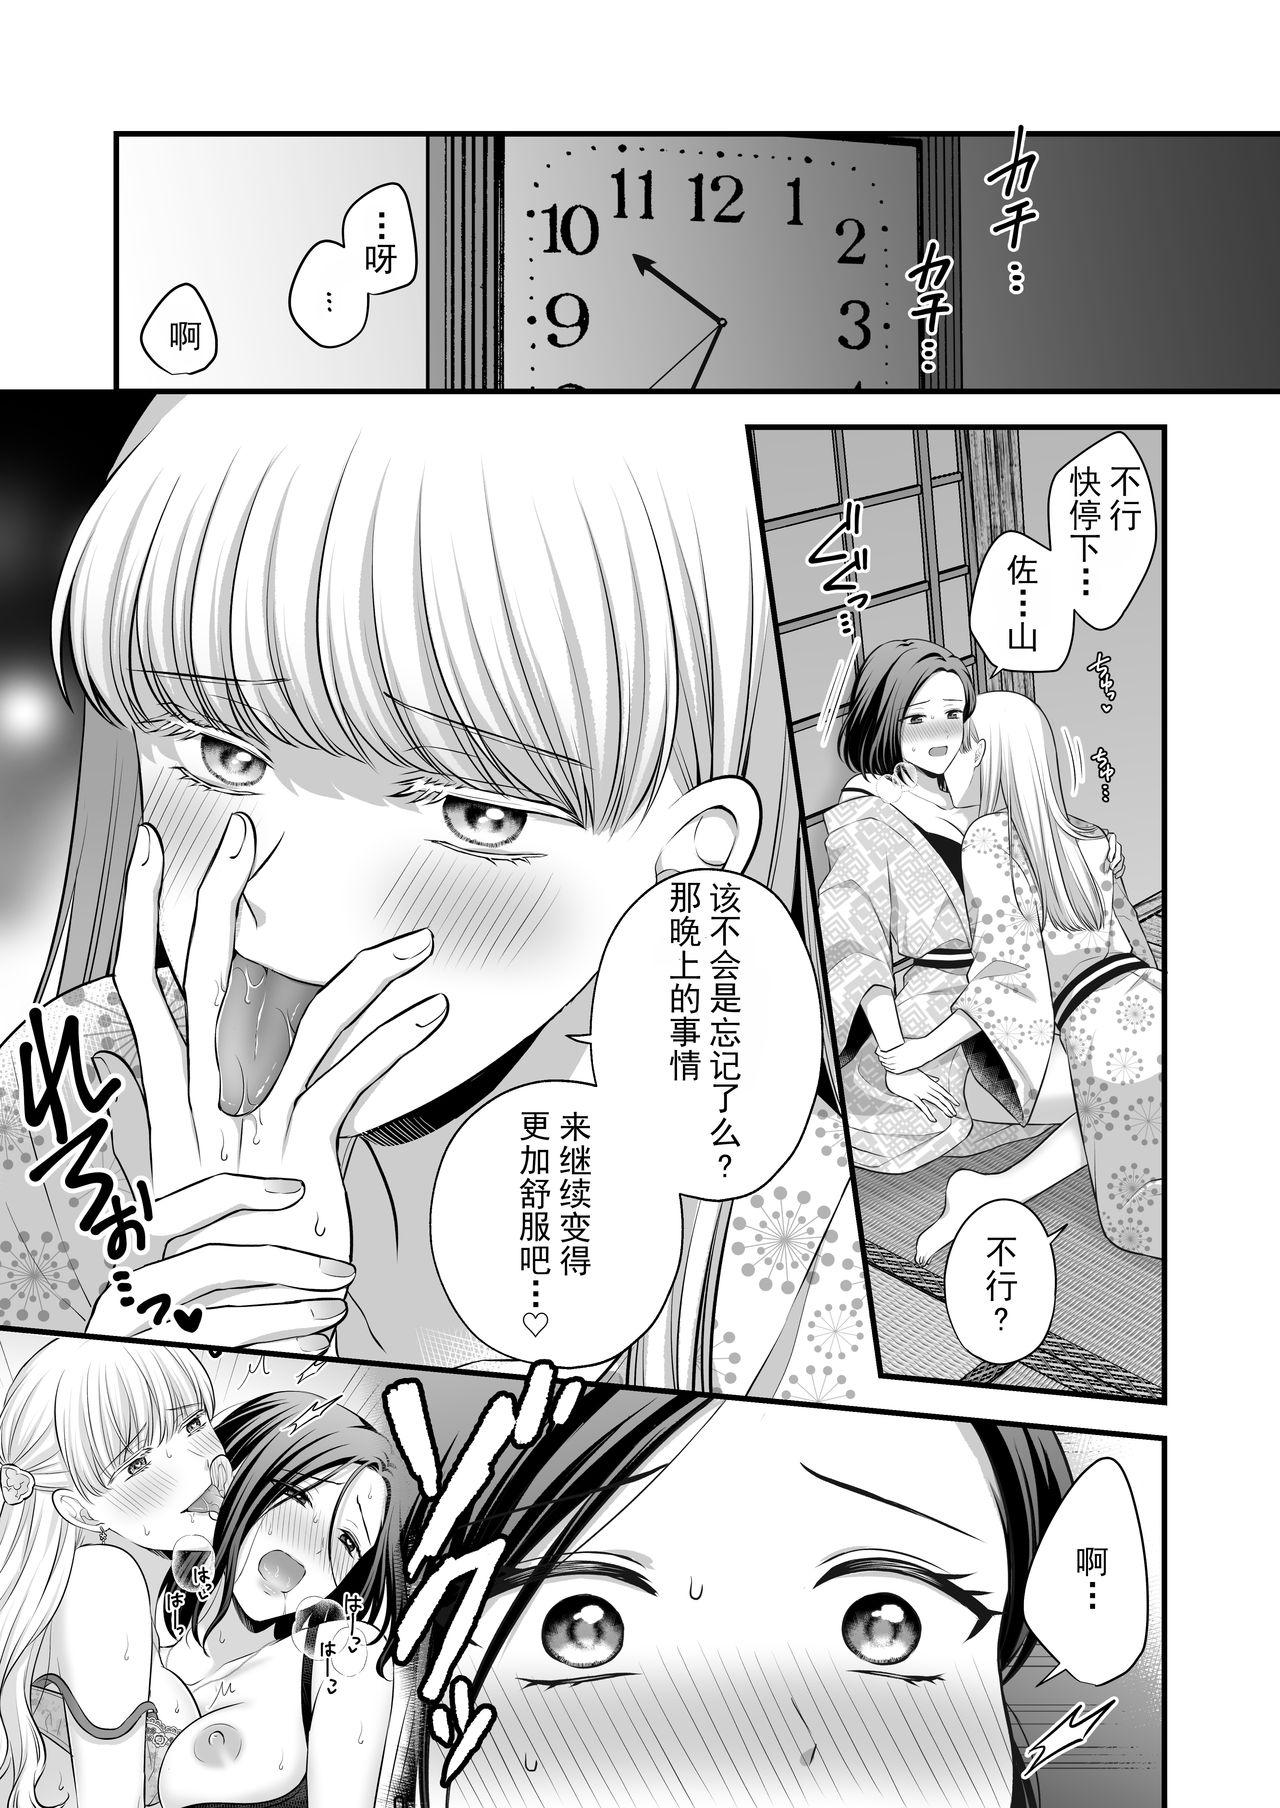 Student Aishite Ii no wa, Karada dake 2- Onsen Ryokou no Yoru - Original Public Sex - Page 4